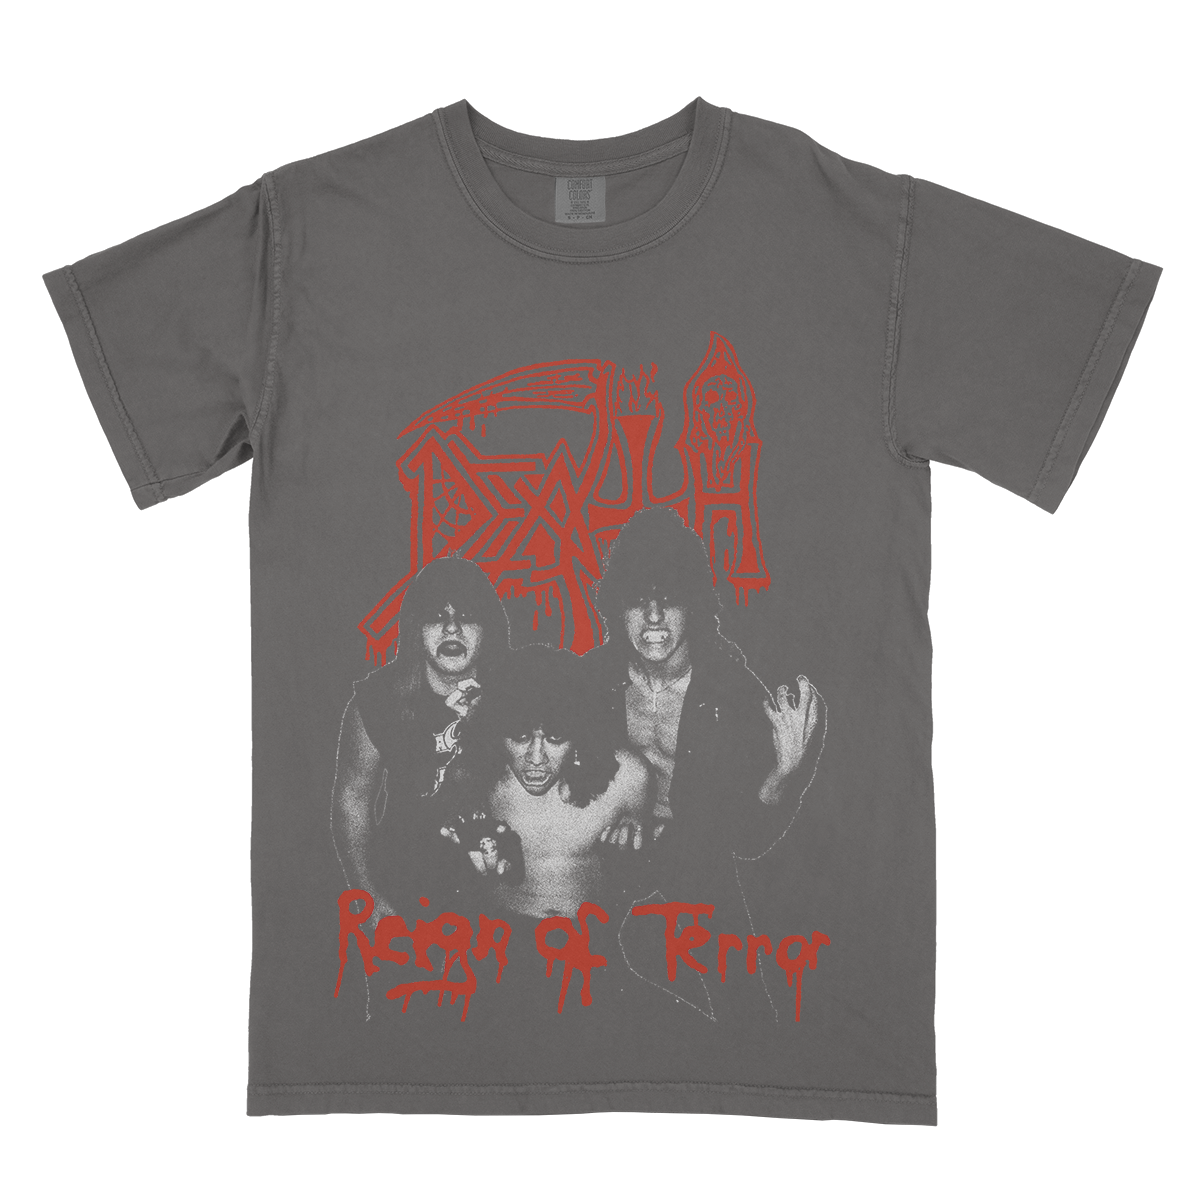 Death "Reign of Terror 2" Shirt